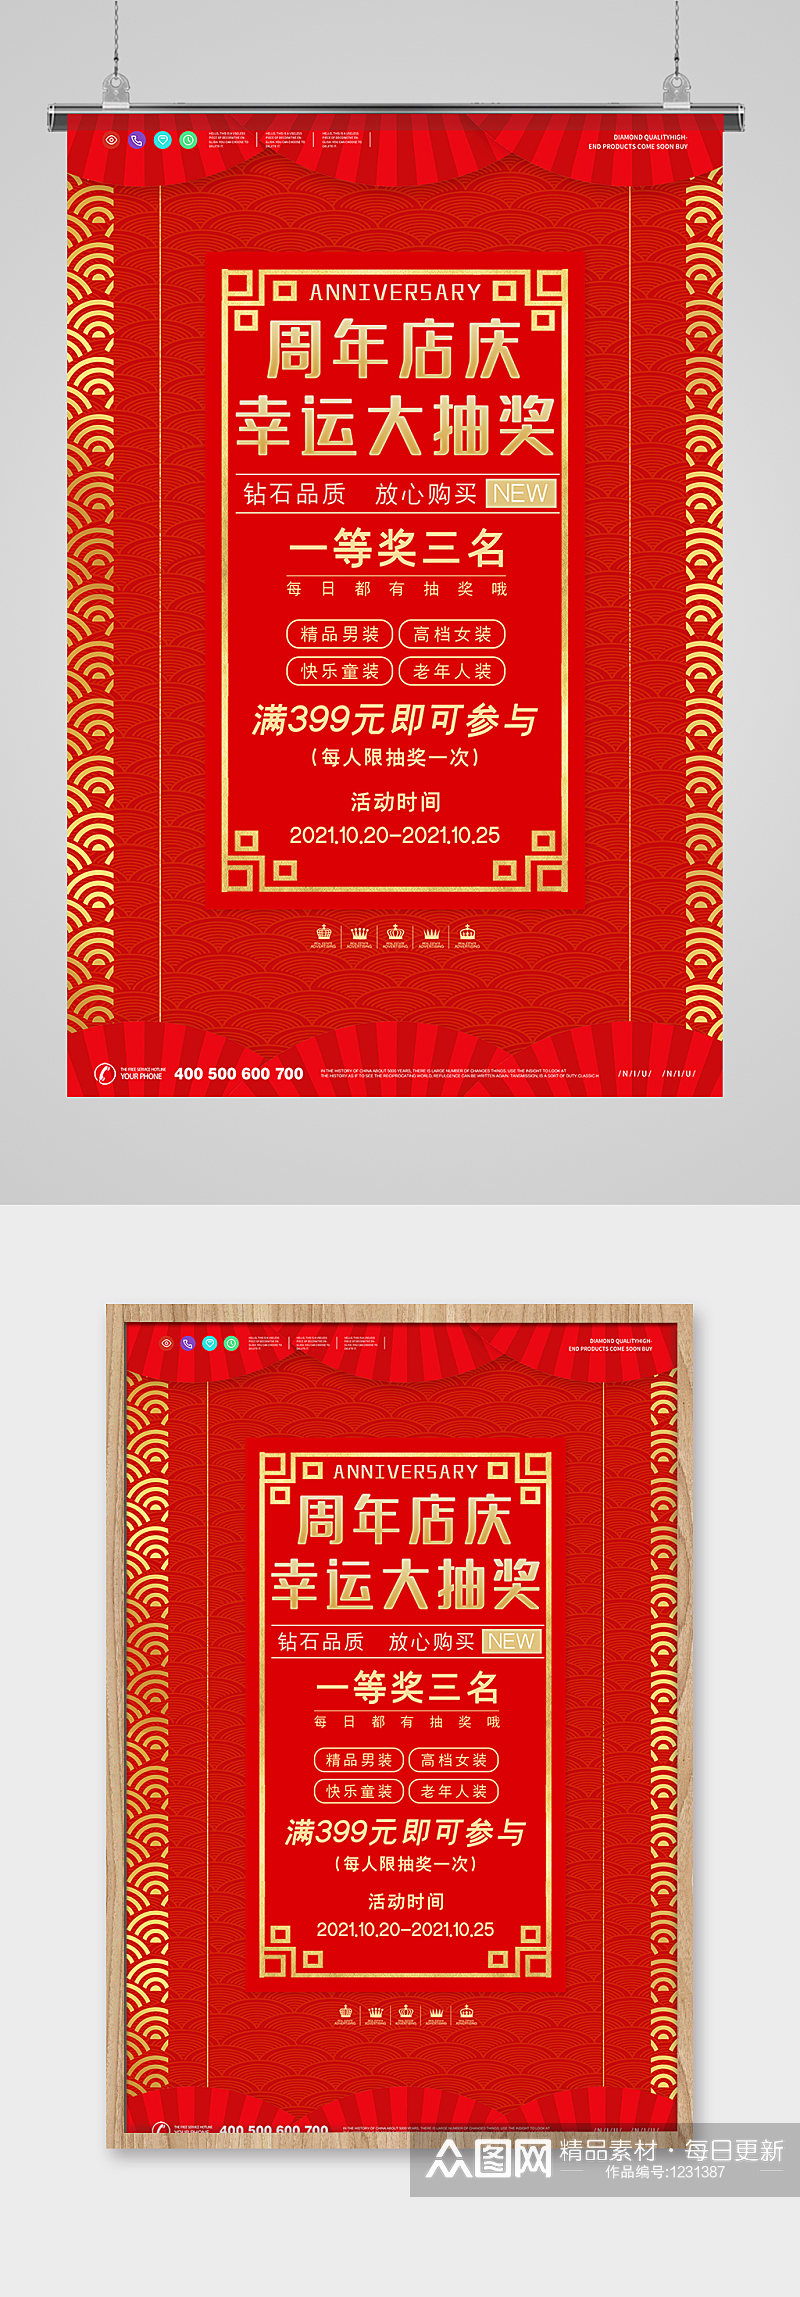 红色喜庆周年庆活动海报设计素材